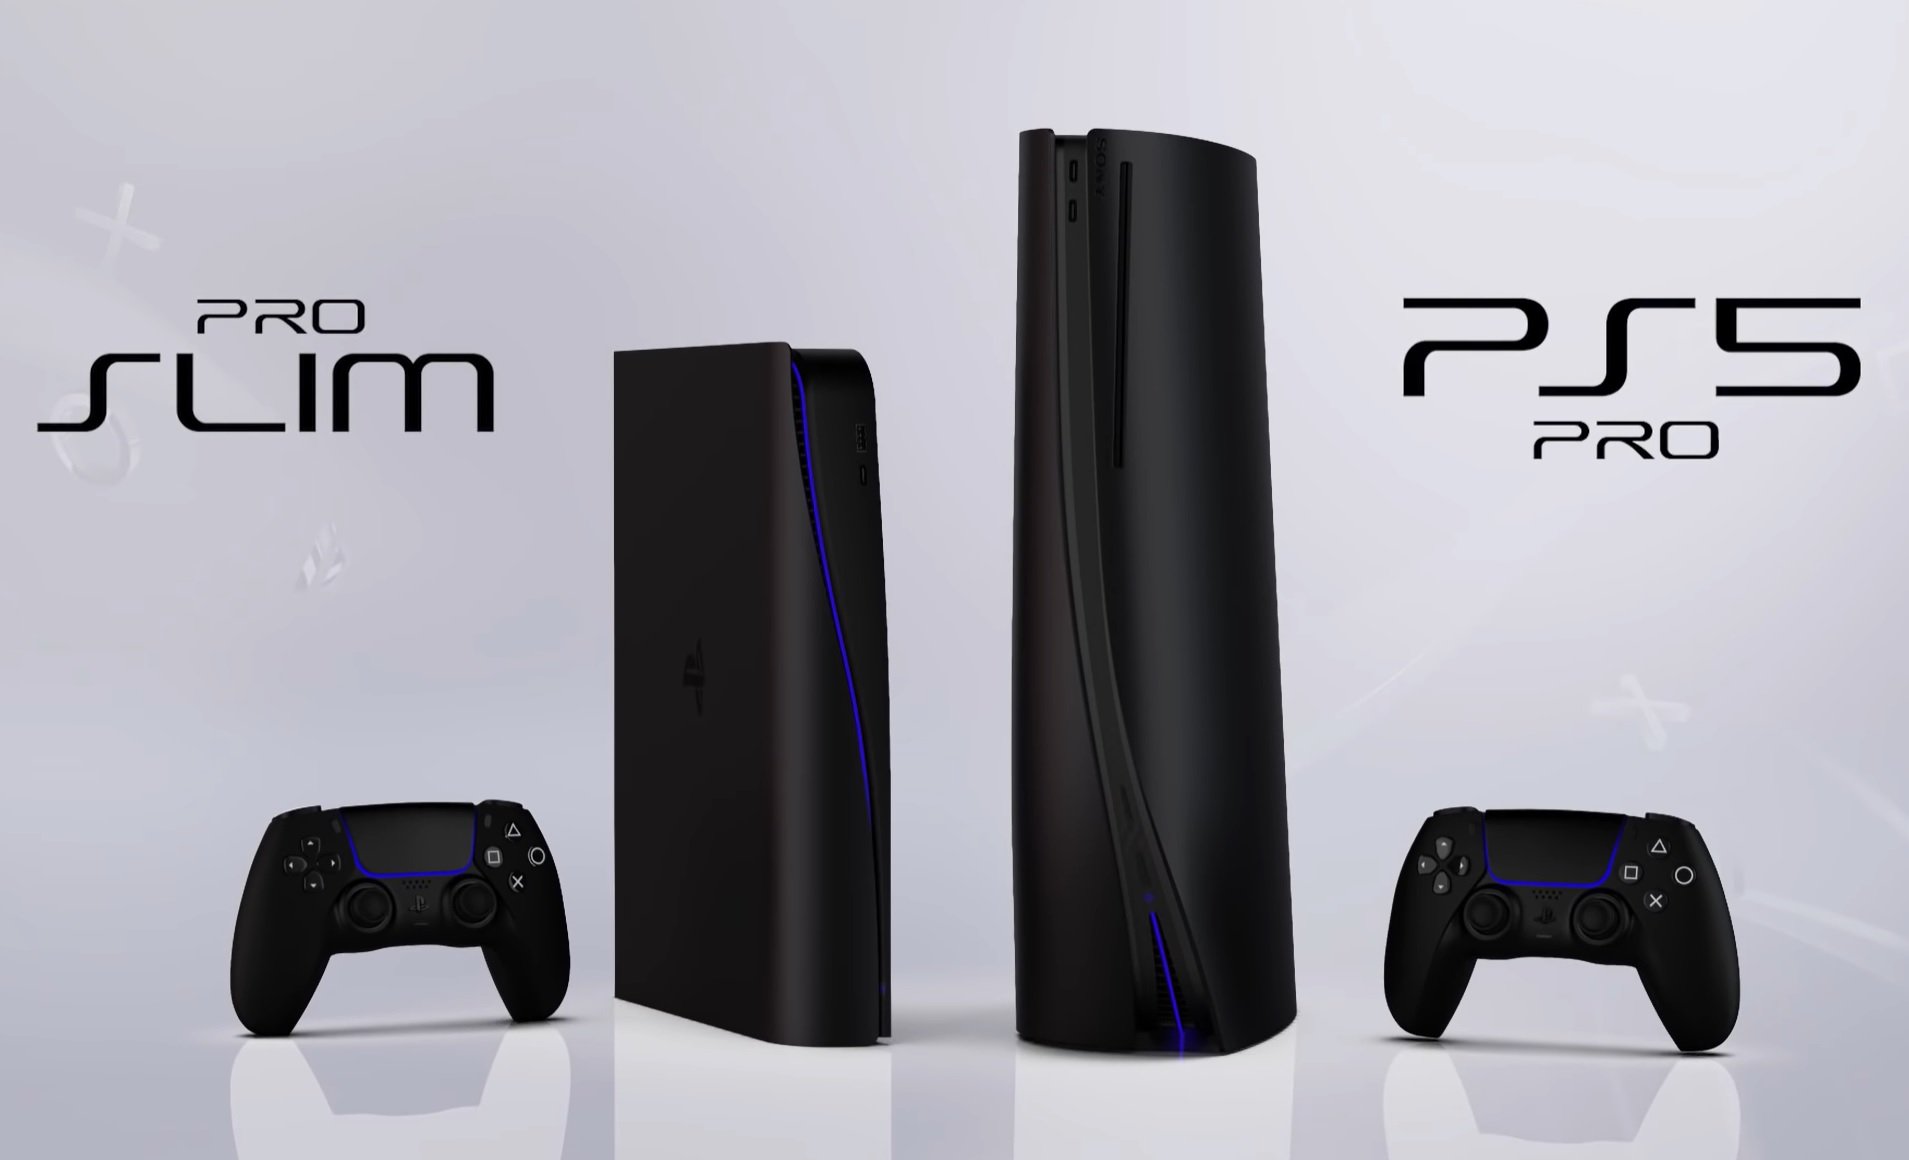 PS5 Pro: vazamento sugere supostas especificações do console